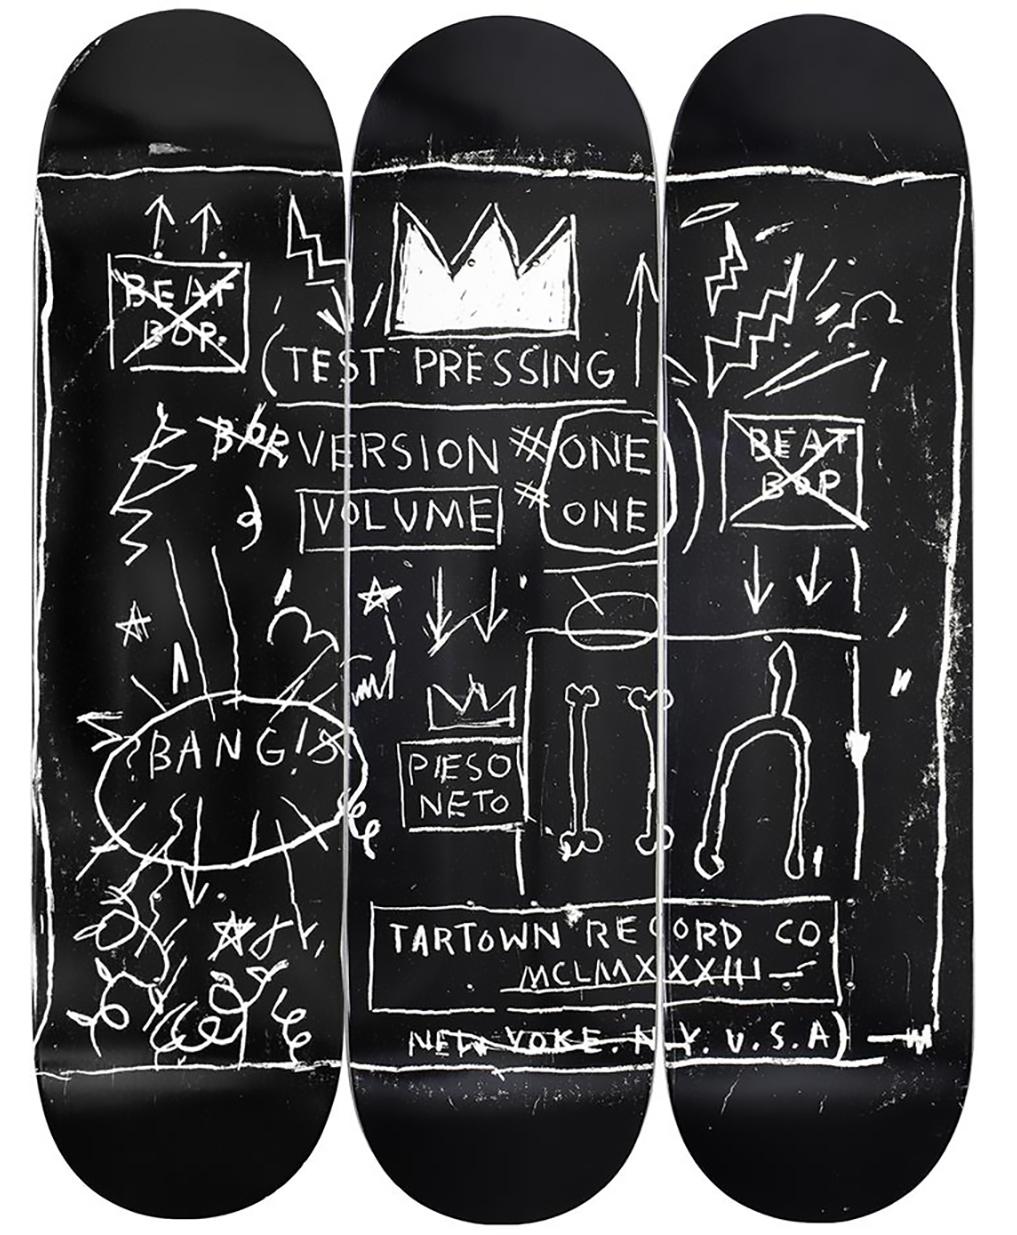 Basquiat Beat Bop Skateboard Decks (set of 3)  - Sculpture by (after) Jean-Michel Basquiat